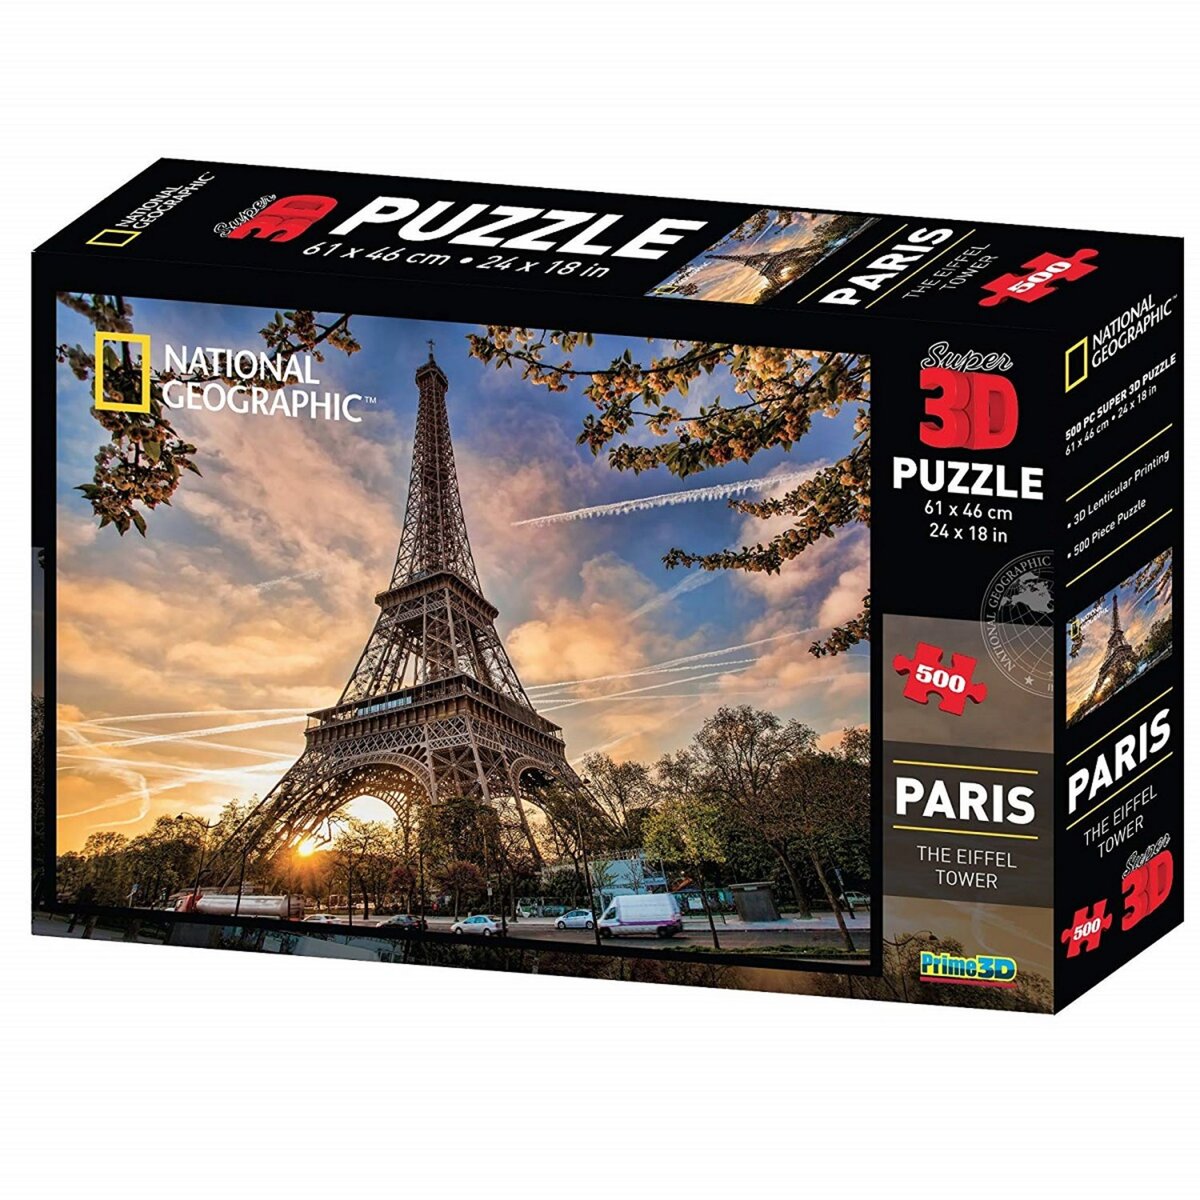 NATIONAL GEOGRAPHIC Puzzle 3D National Geographic - La Tour Eiffel Paris